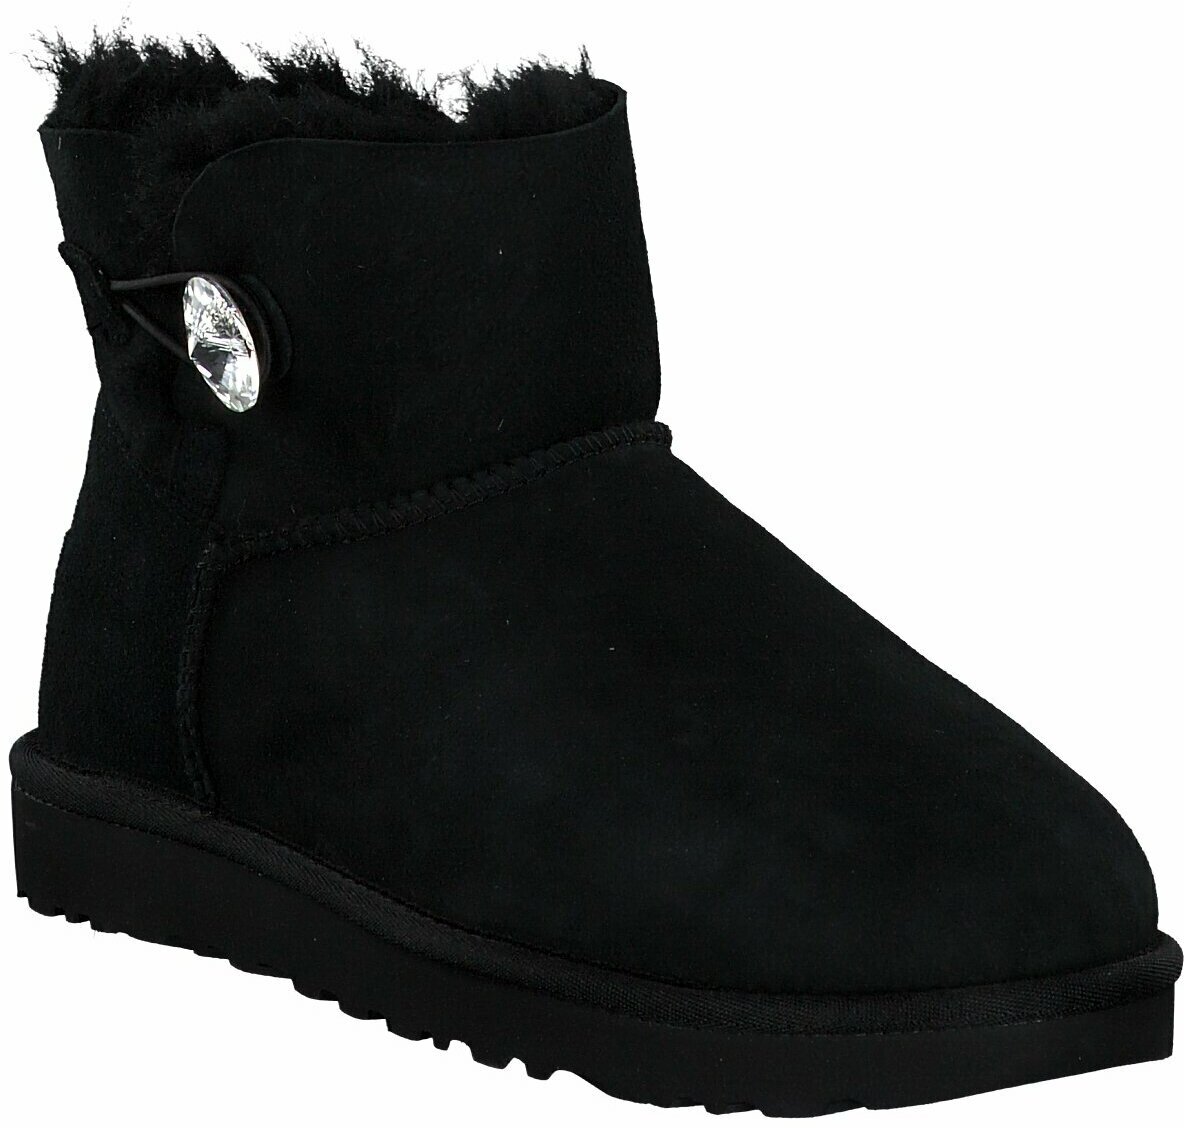 Ugg Australia Winter Boots Fur Damen In Schwarz Winter Stiefel 3727 Schwarz Leder Damenschuhe